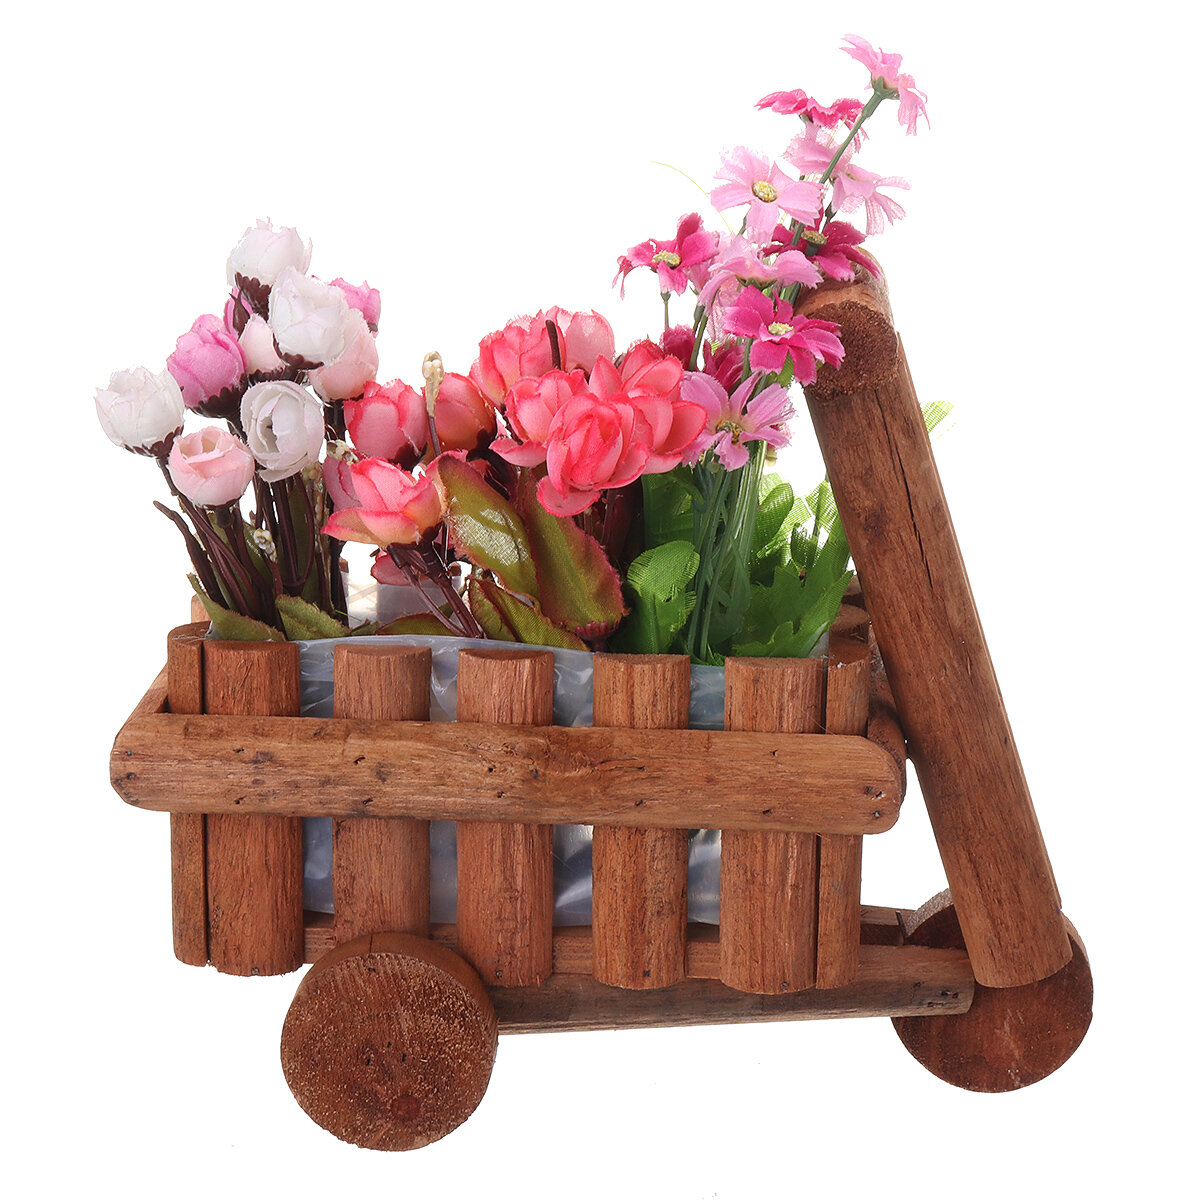 Small Cart Flower Pot Wooden Wheelbarrow Planter Succulent Container Ornament